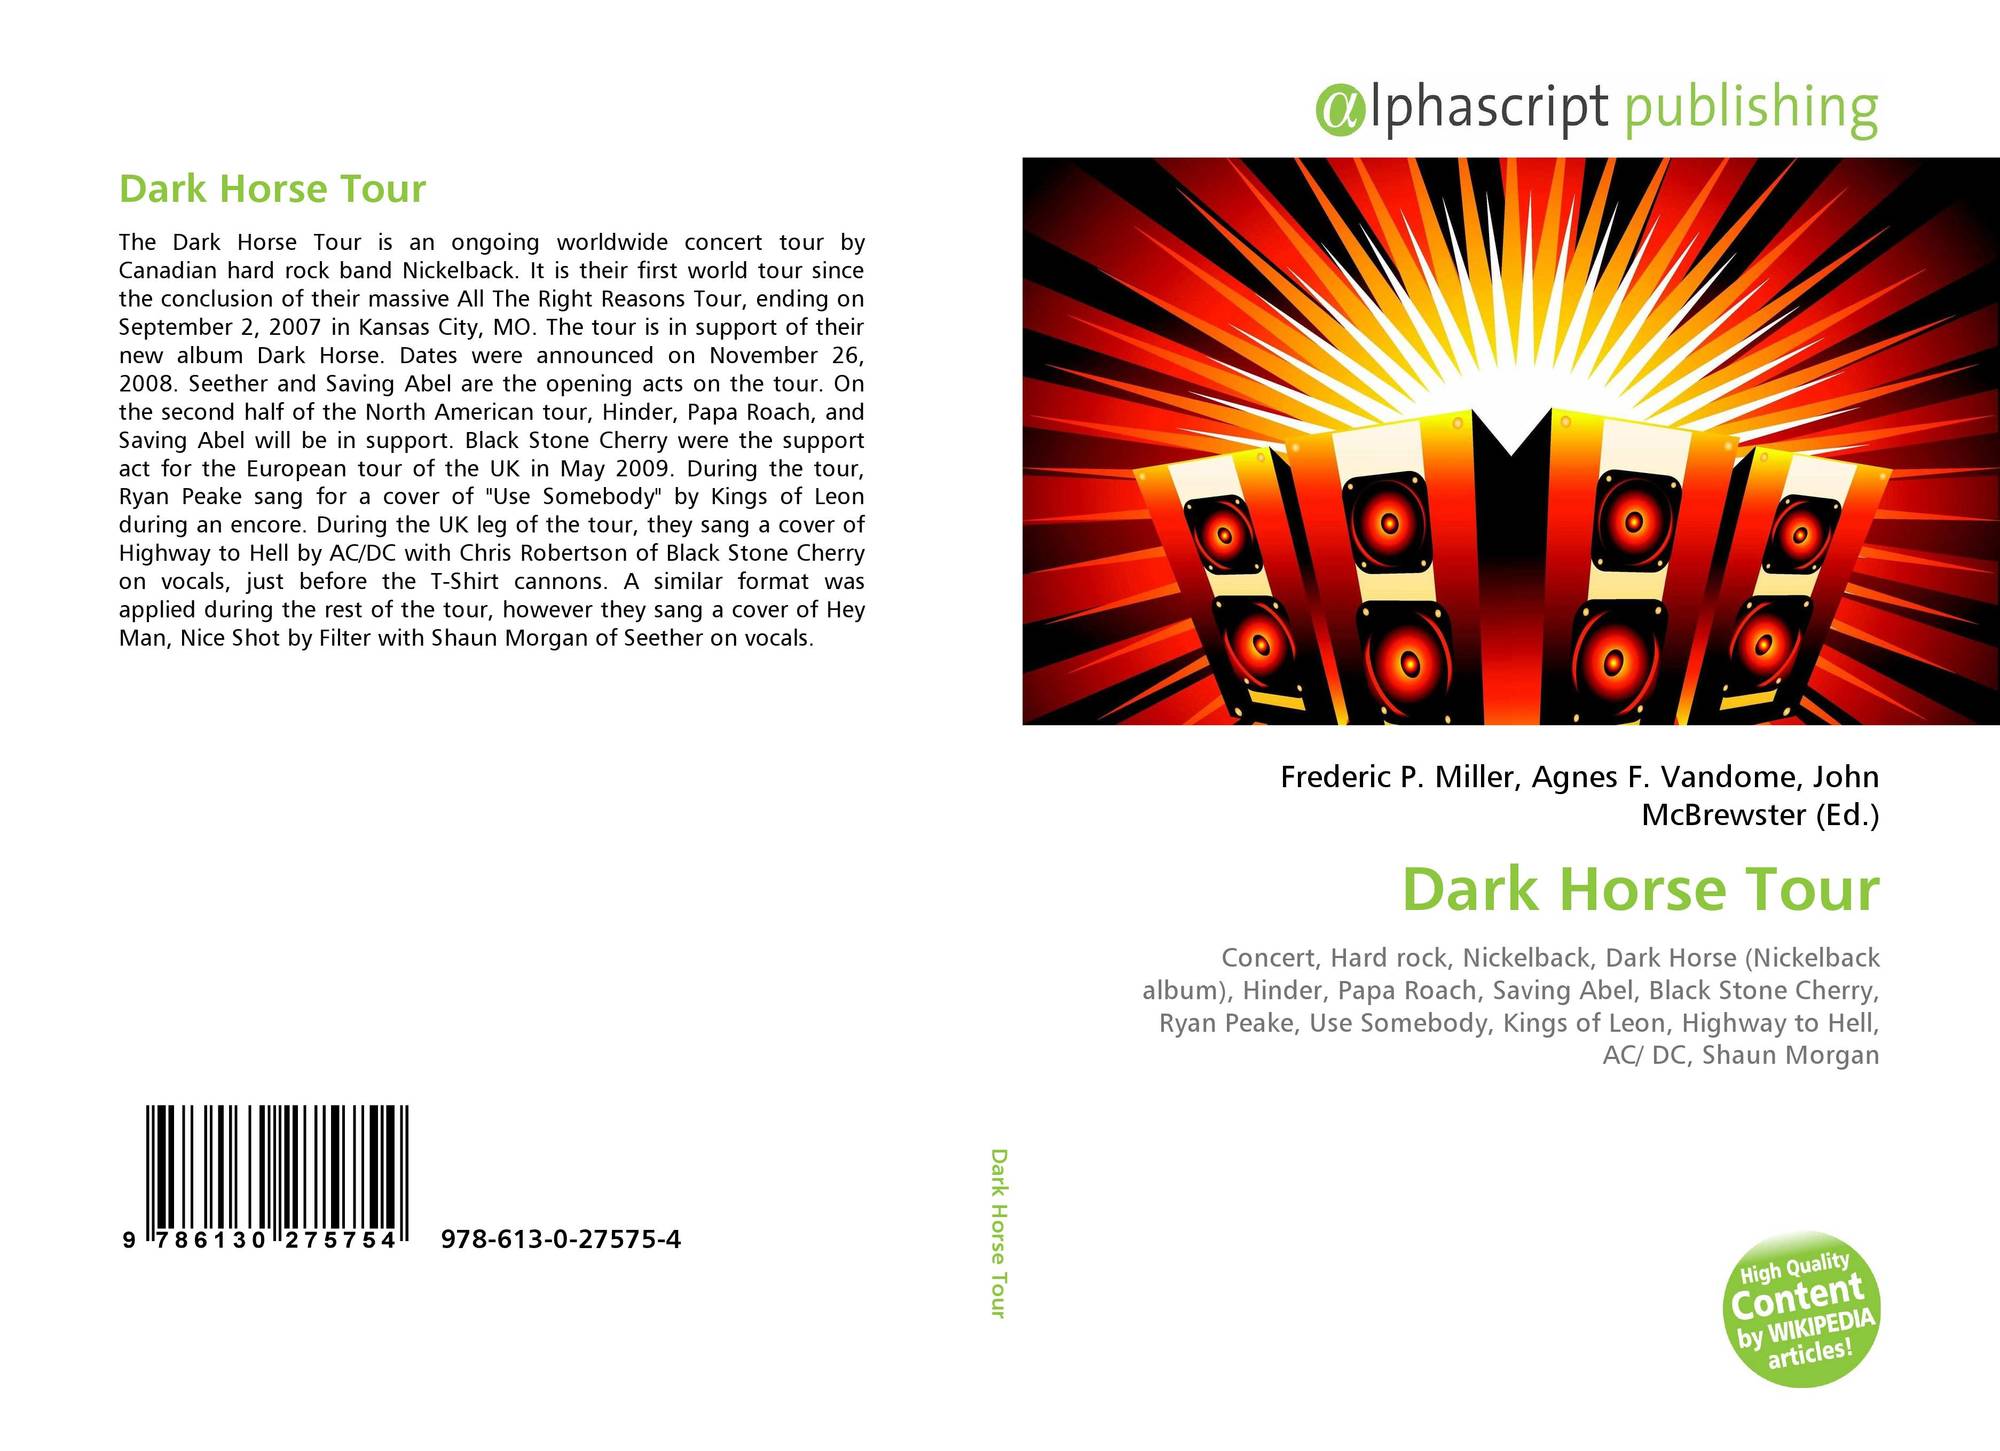 nickelback album cover dark horse